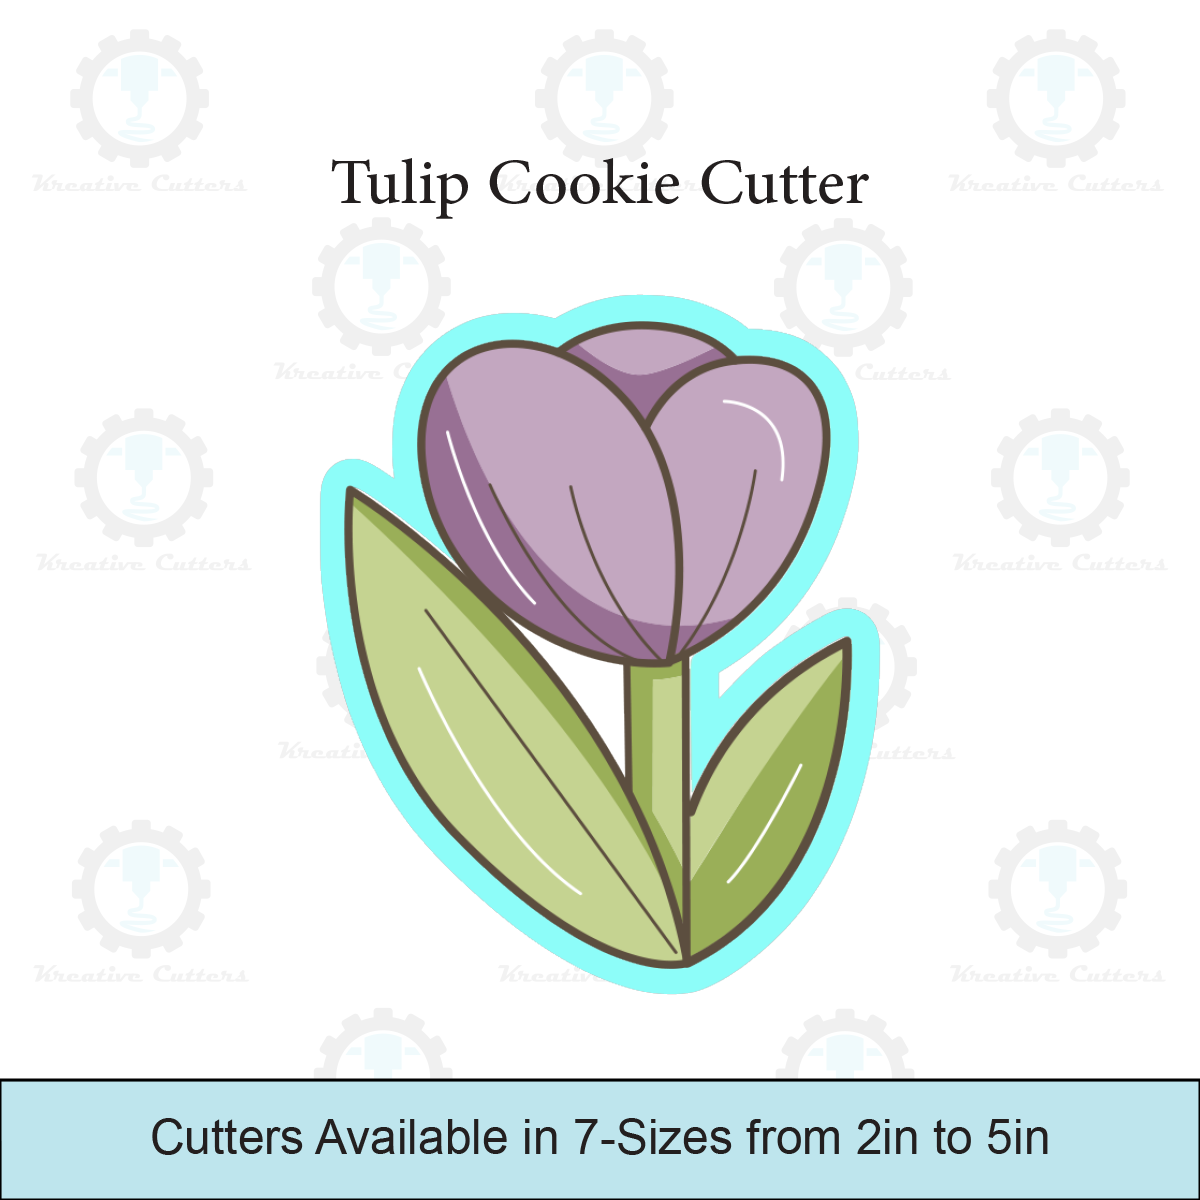 Tulip Cookie Cutter